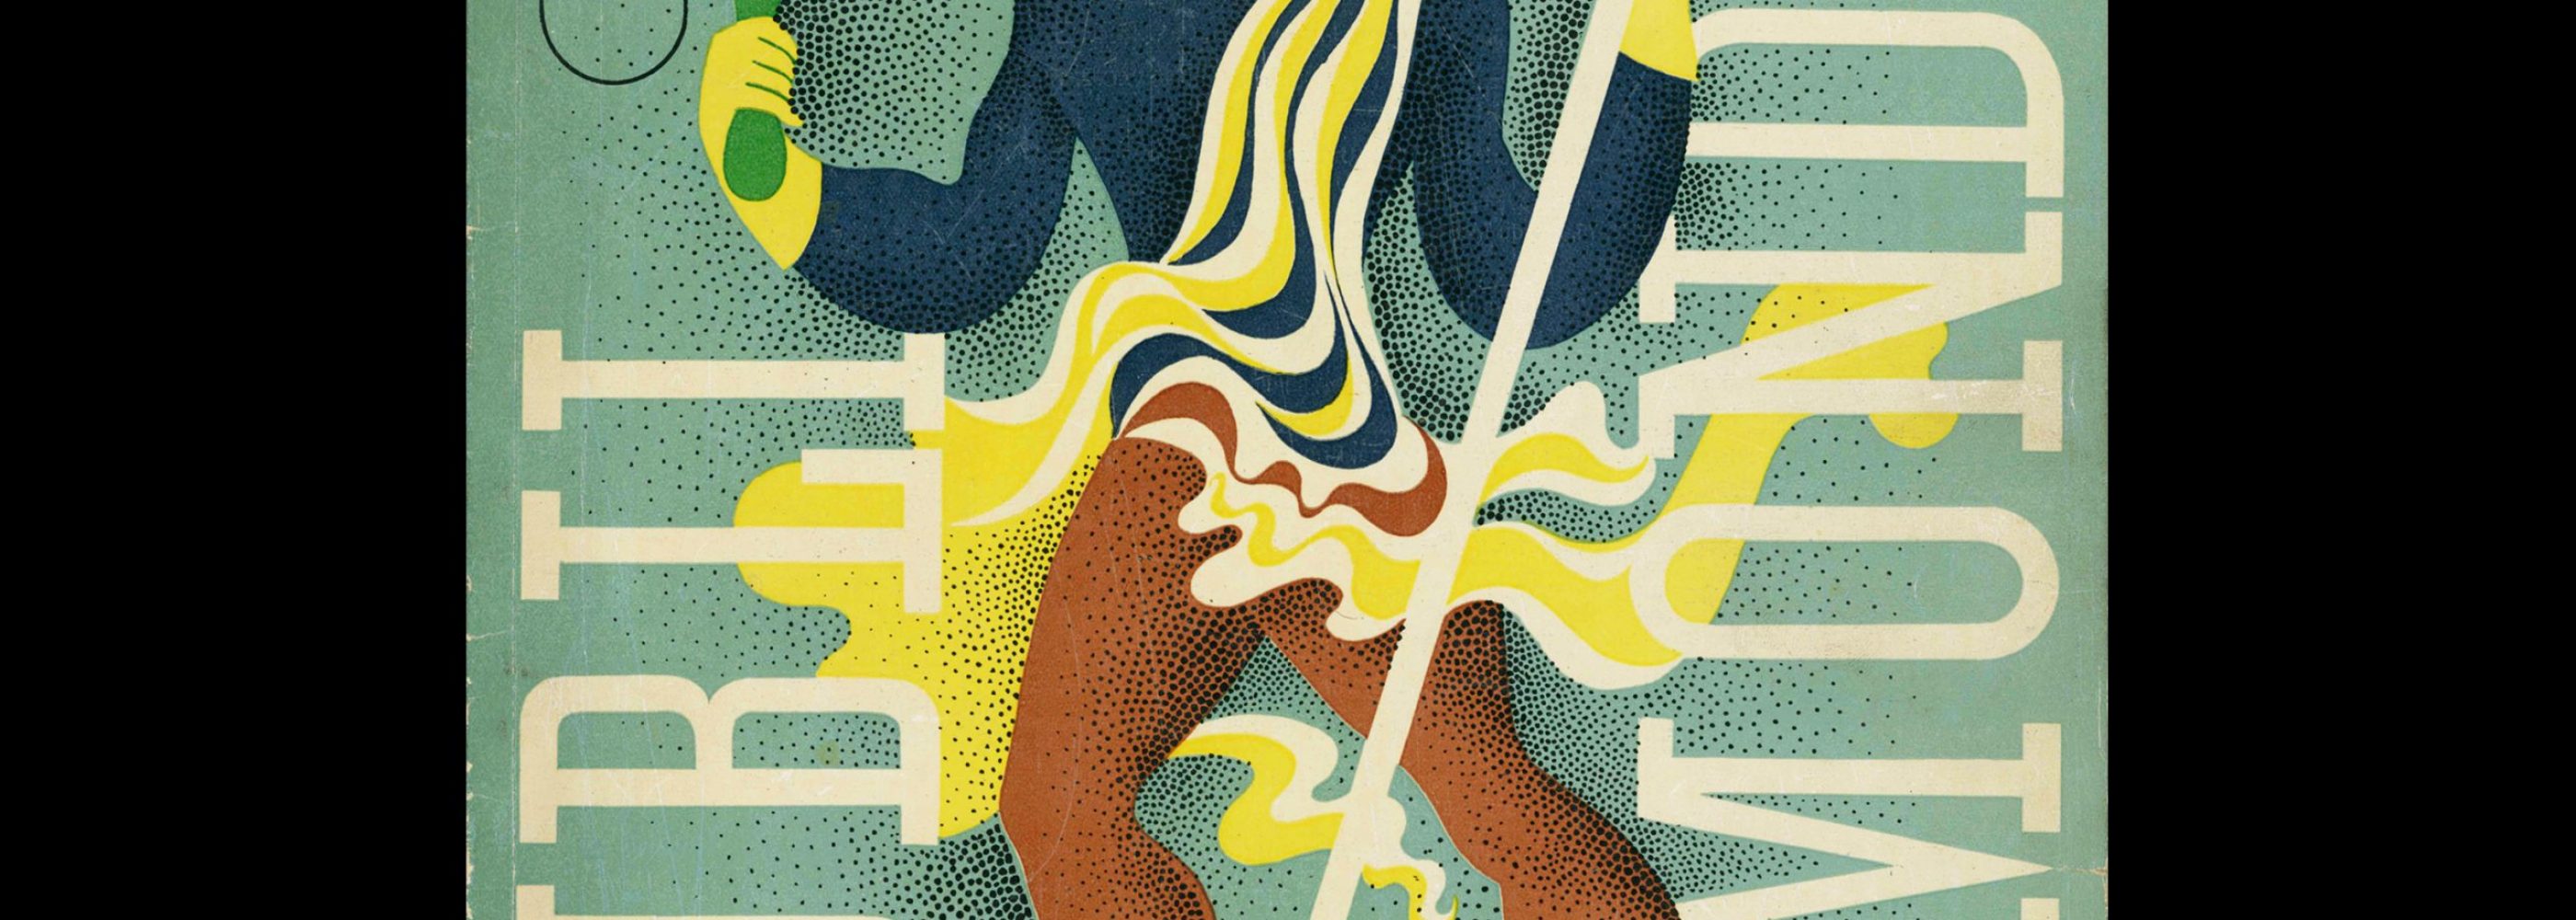 Publimondial 9, 1947. Cover design by Paul Ternat